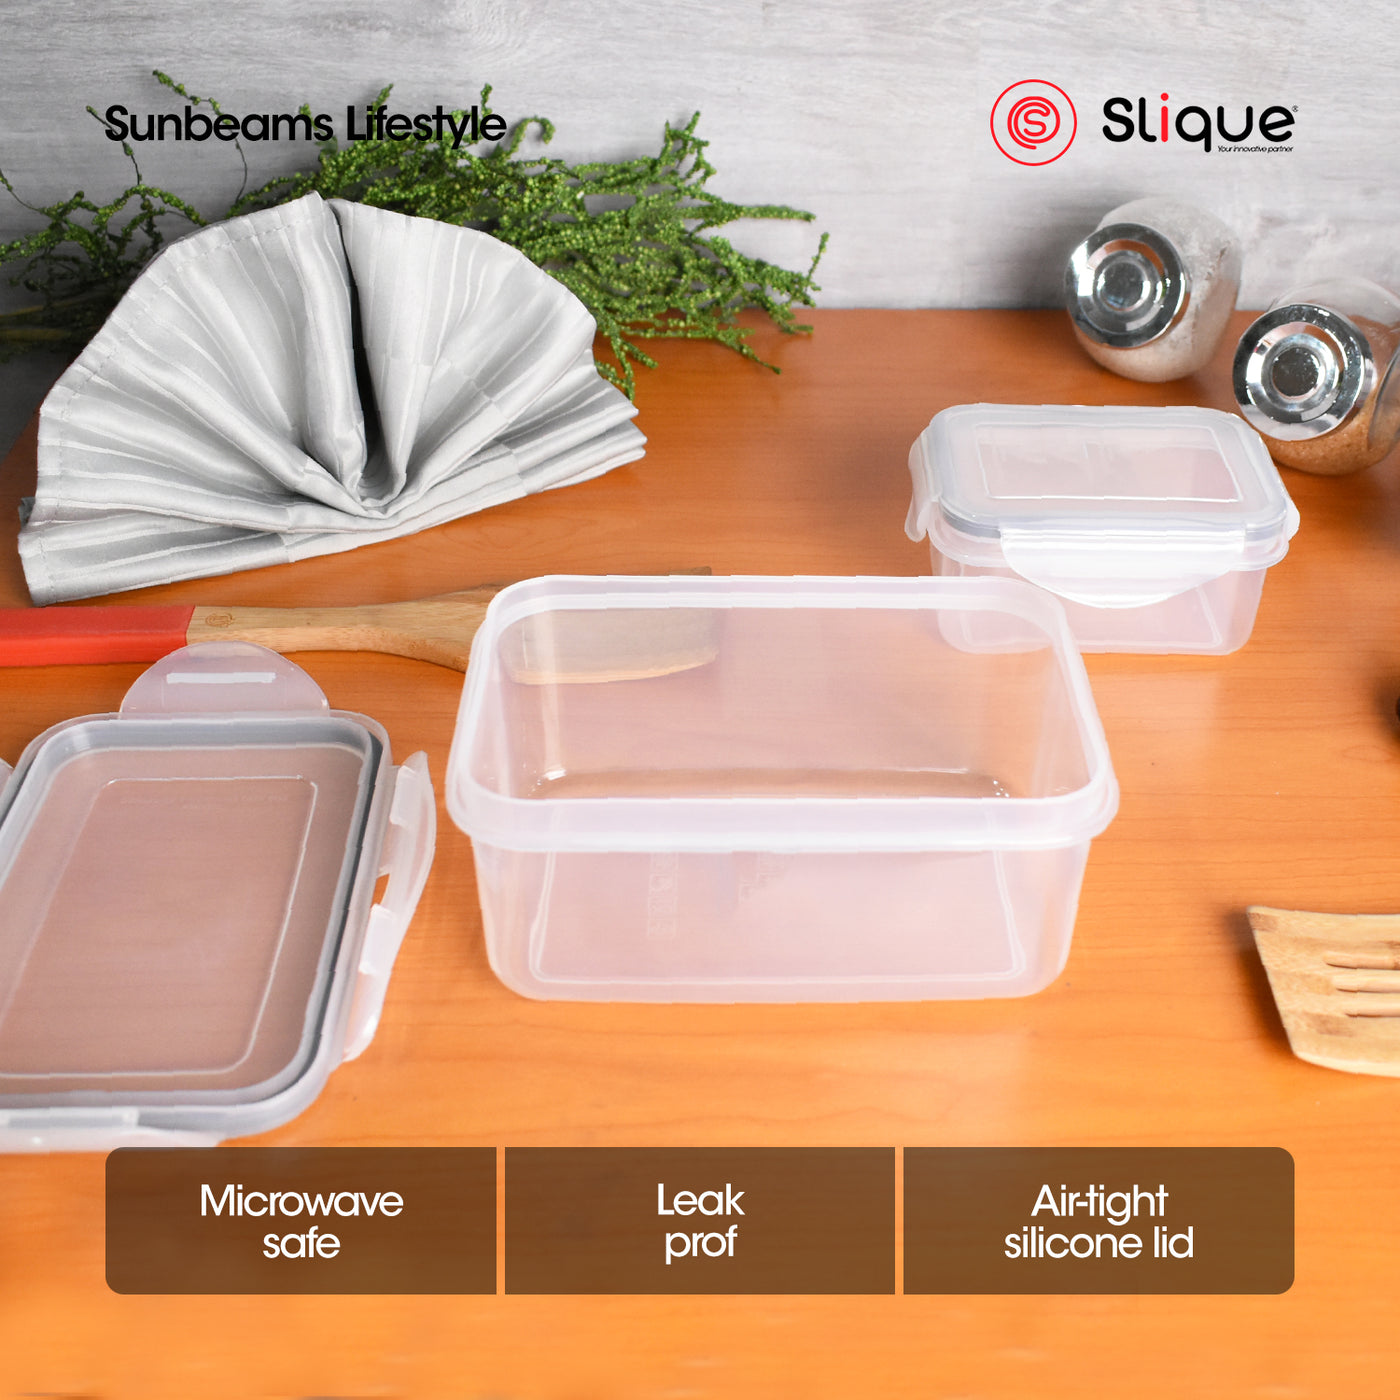 SLIQUE Premium PP Rectangular Food Container Airtight | Leak Proof Storage Essentials Amazing Gift Idea For Any Occasion! 1100ml